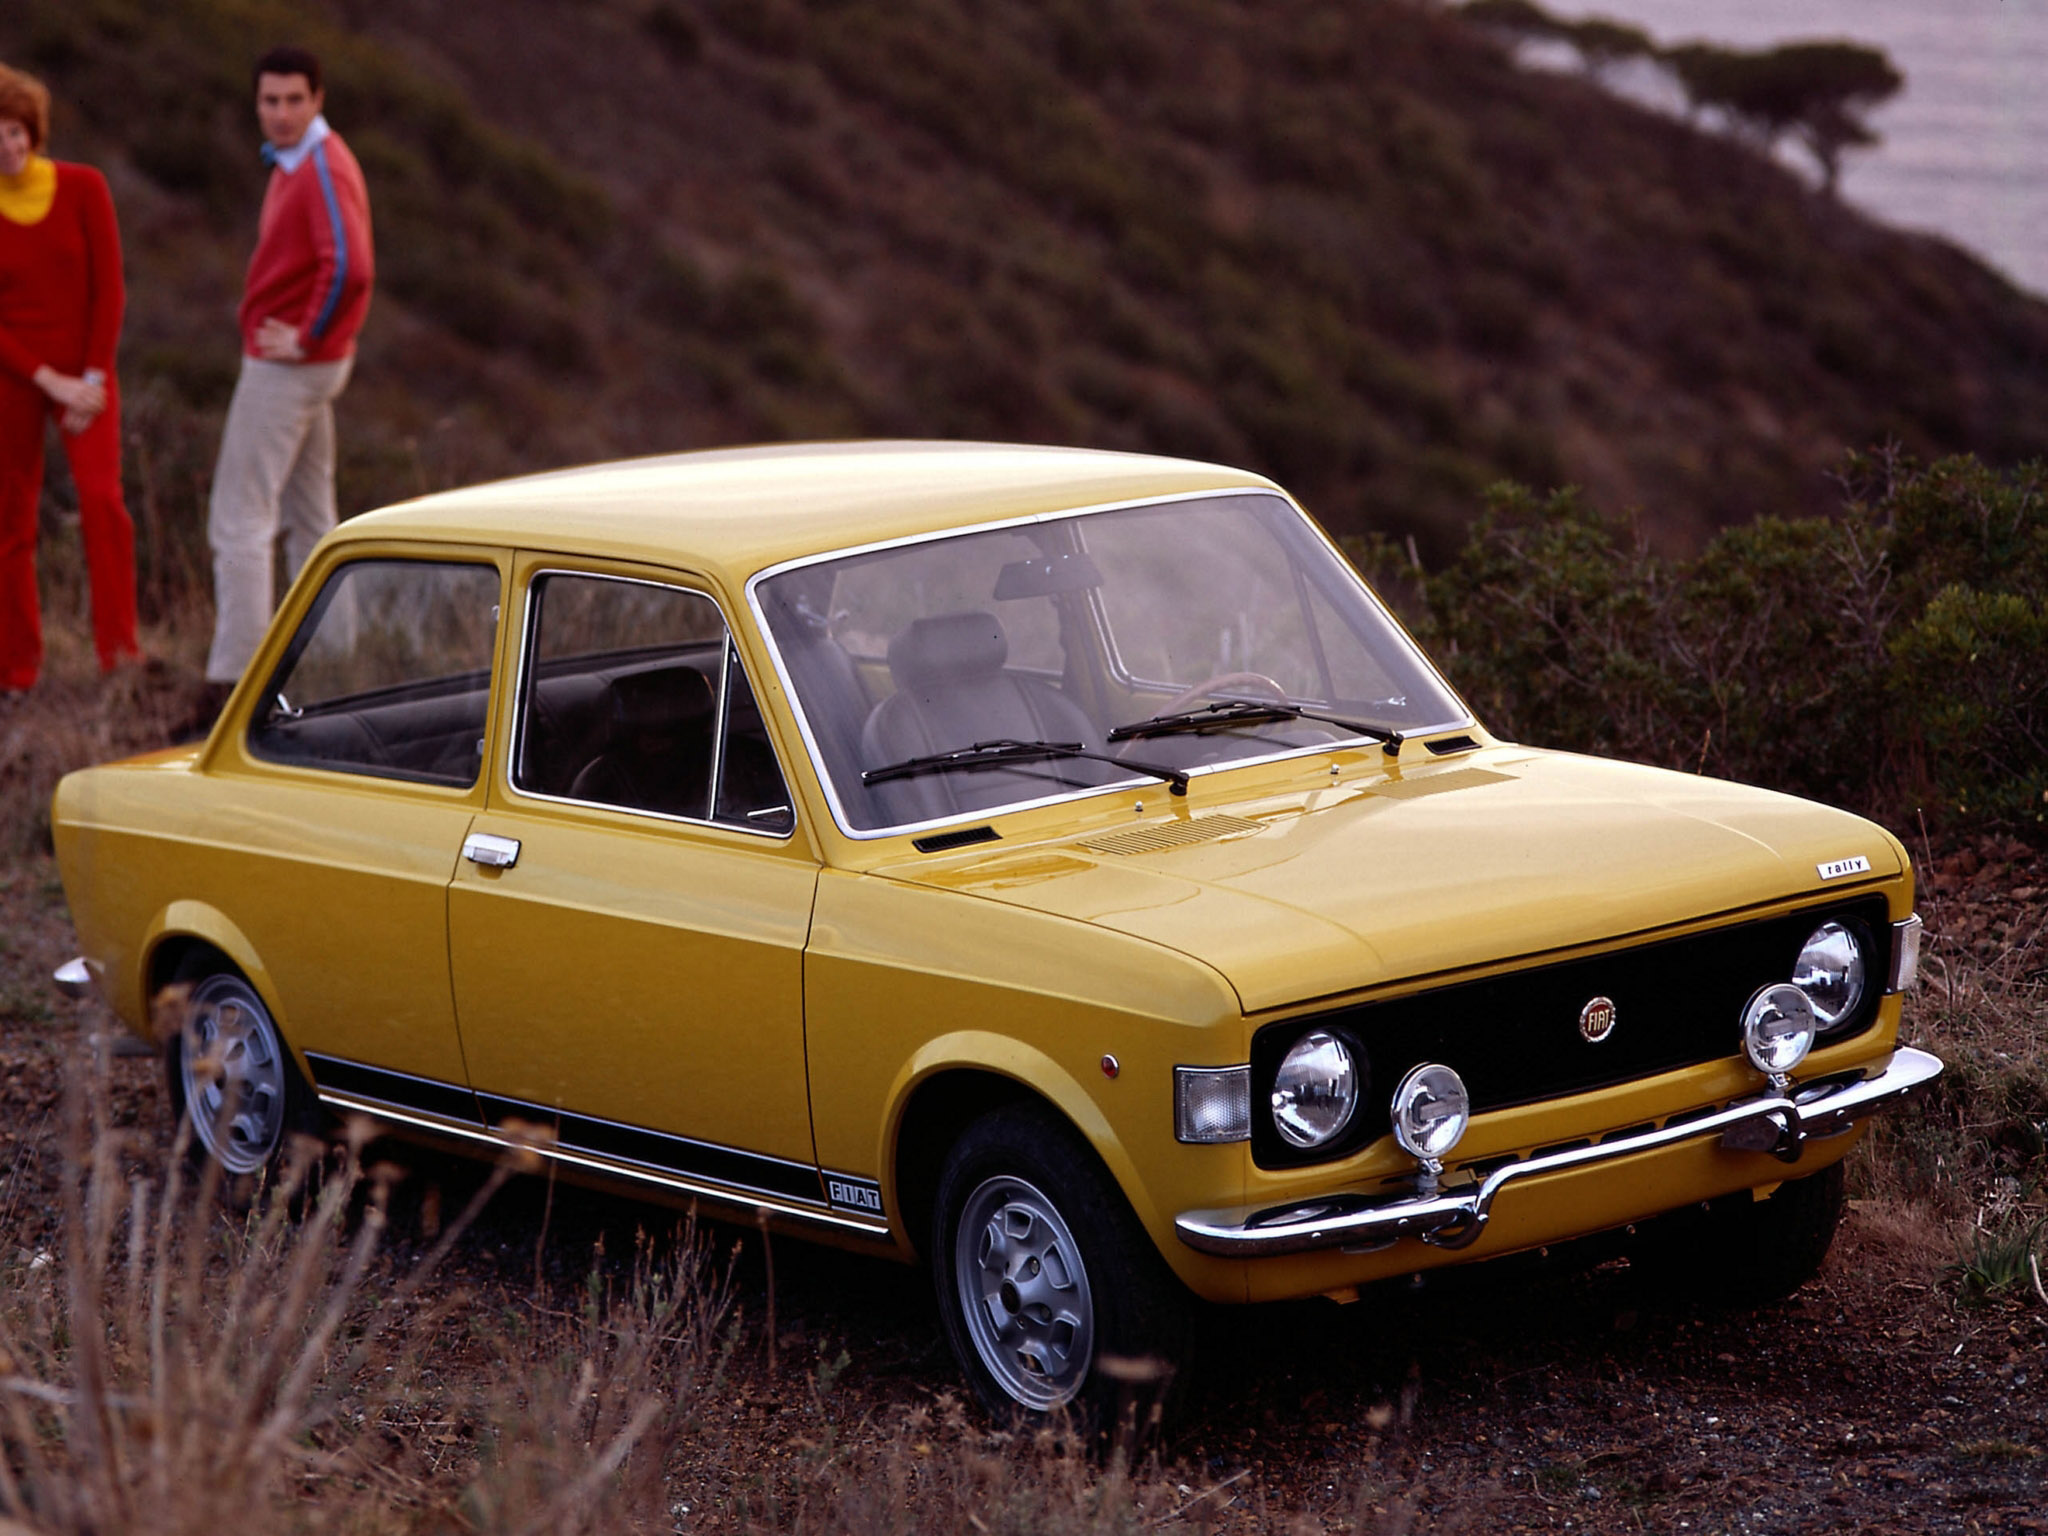 Fiat 125 Wagon: Galerie de photos, informations complètes sur le modèle...